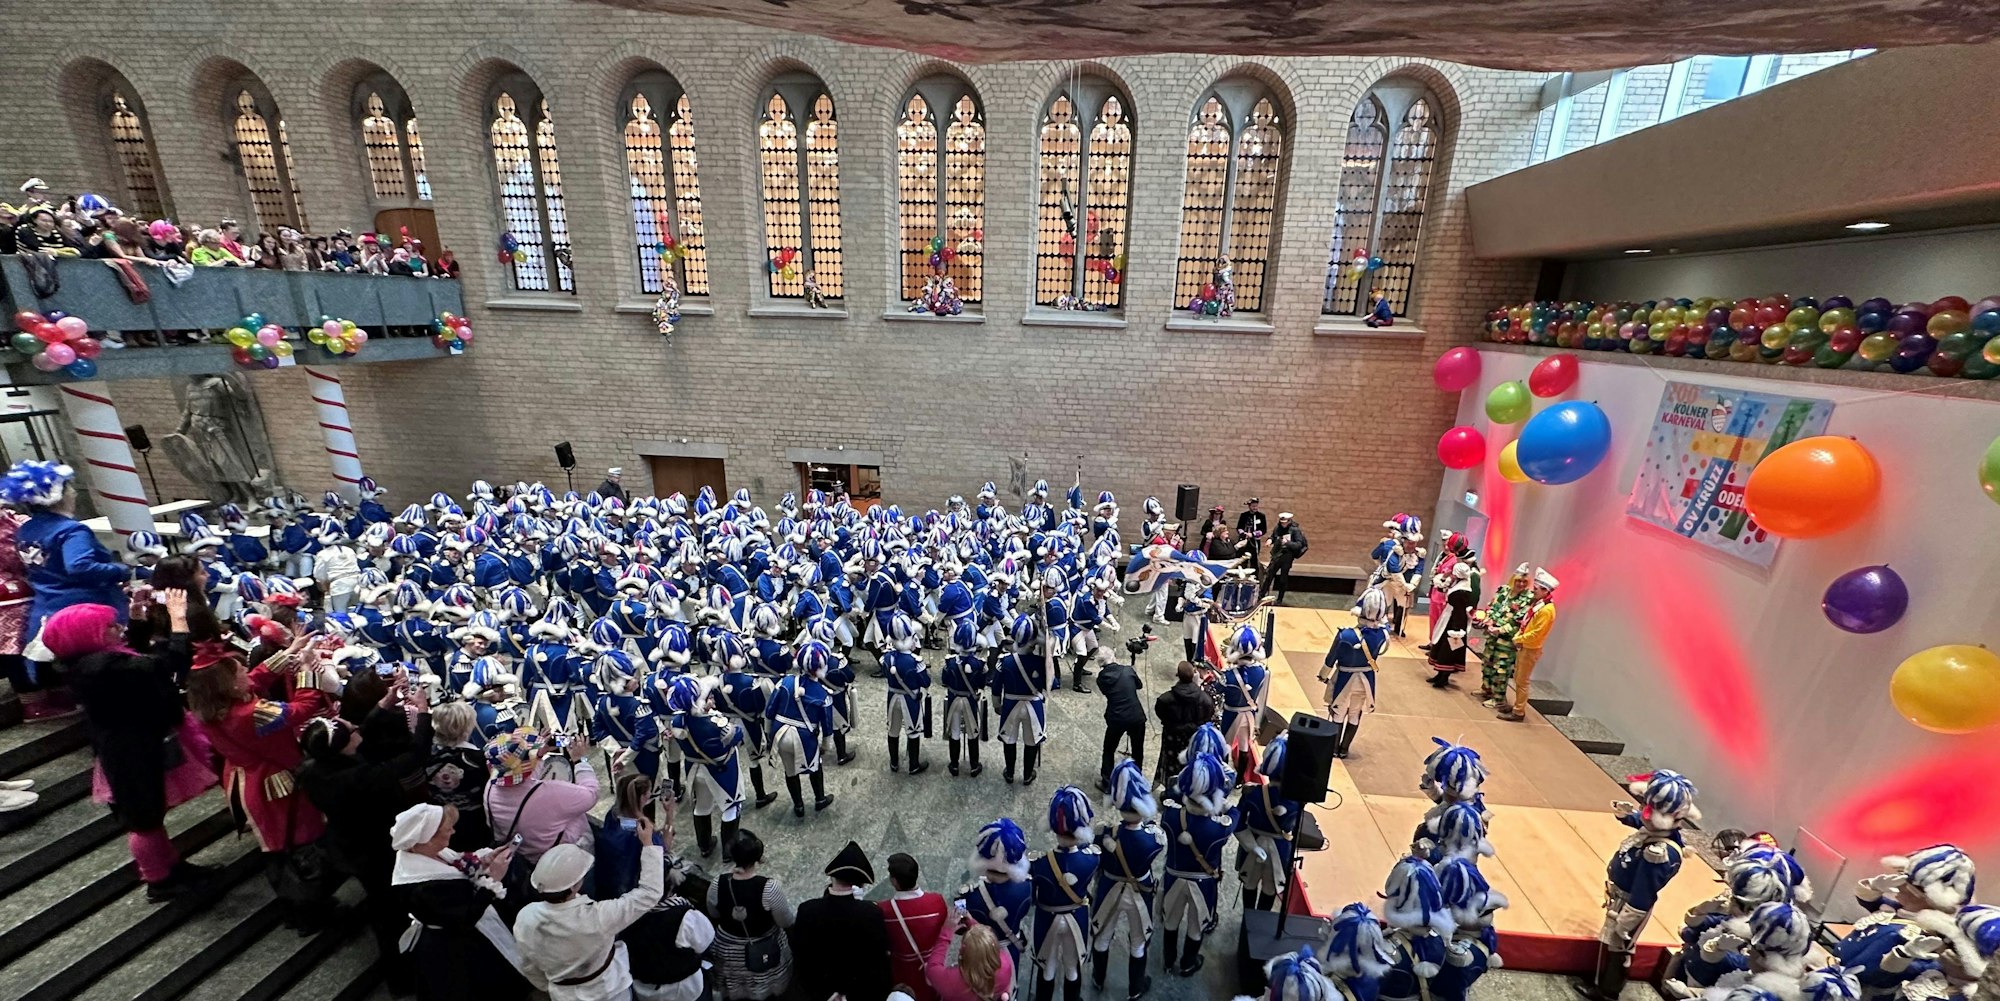 Traditionell werden auch die Blauen Funken empfangen in der Piazetta des Rathauses.